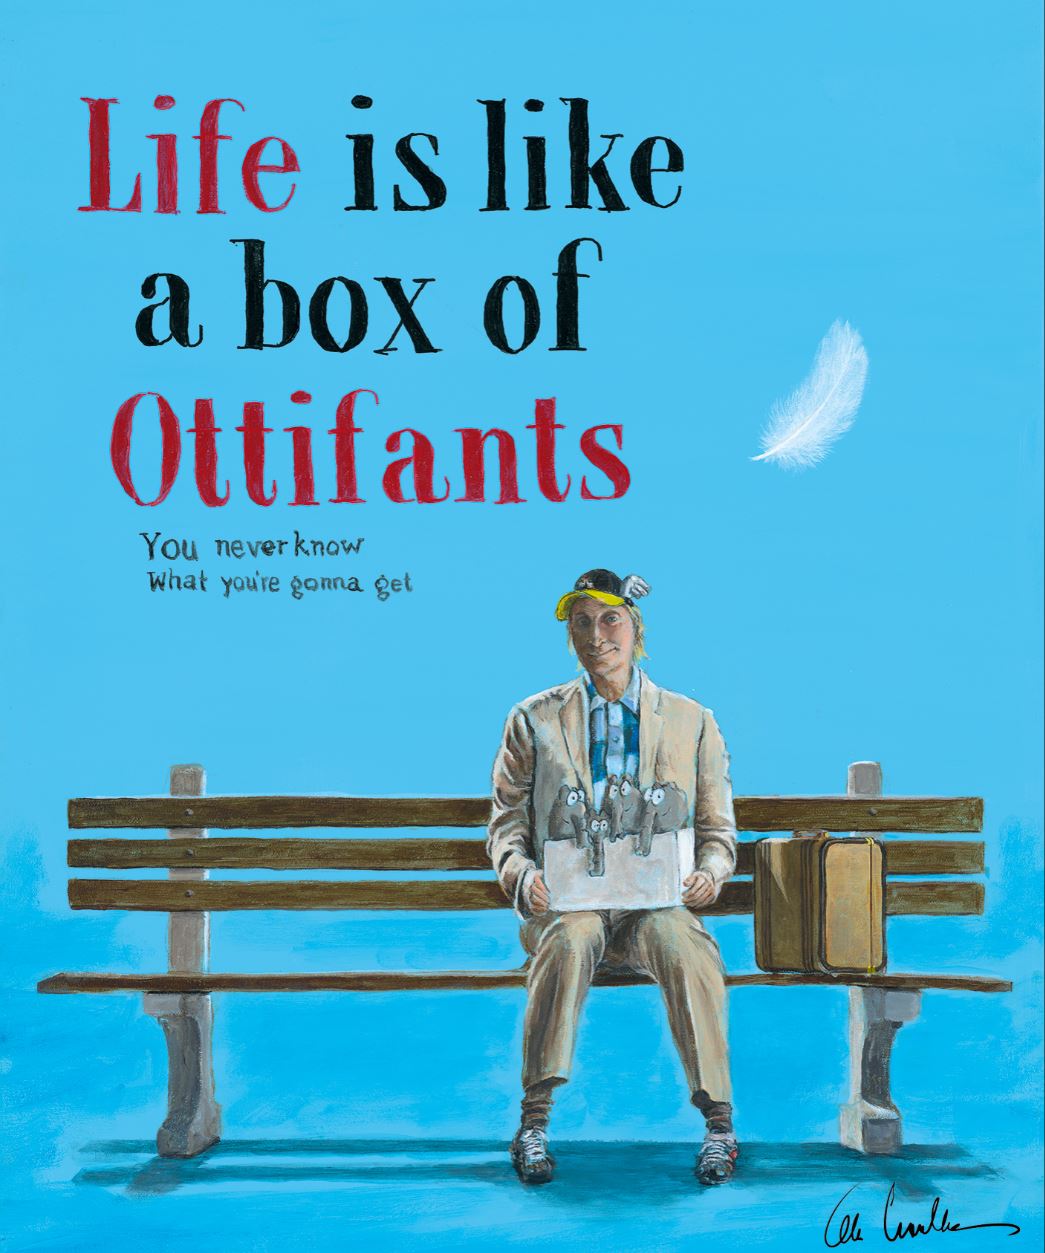 Box of Ottifants - Otto Waalkes